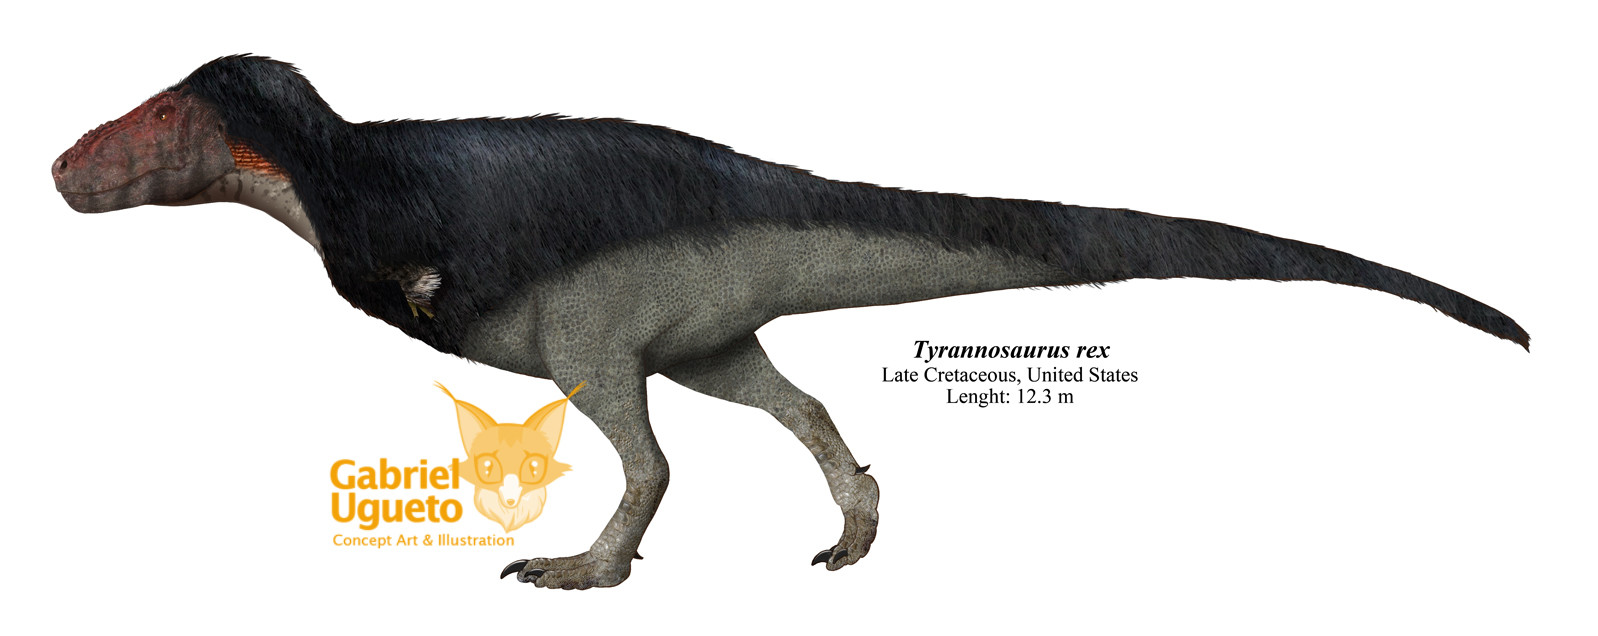 ArtStation - Tyrannosaurus, T-rex Dinosaur